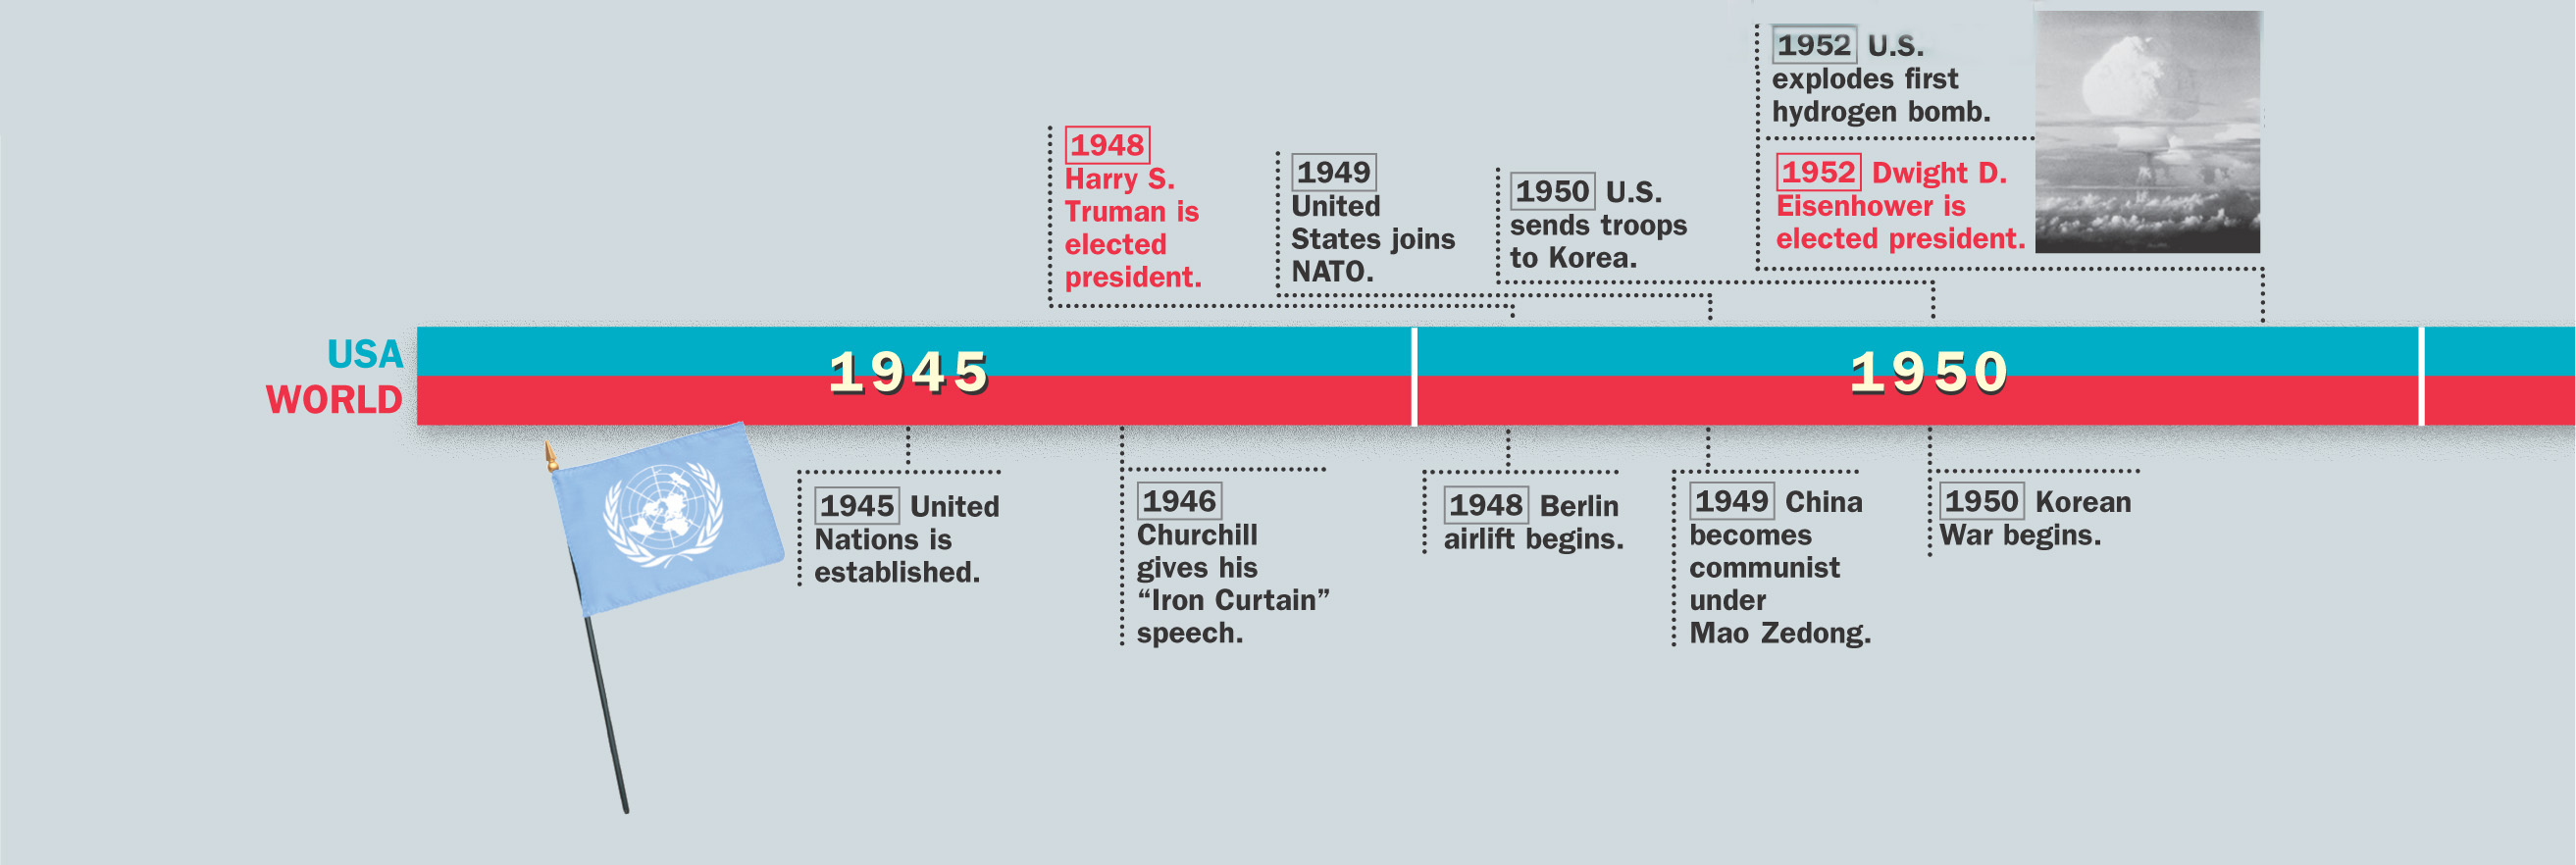 Timeline: 1945 - 1952